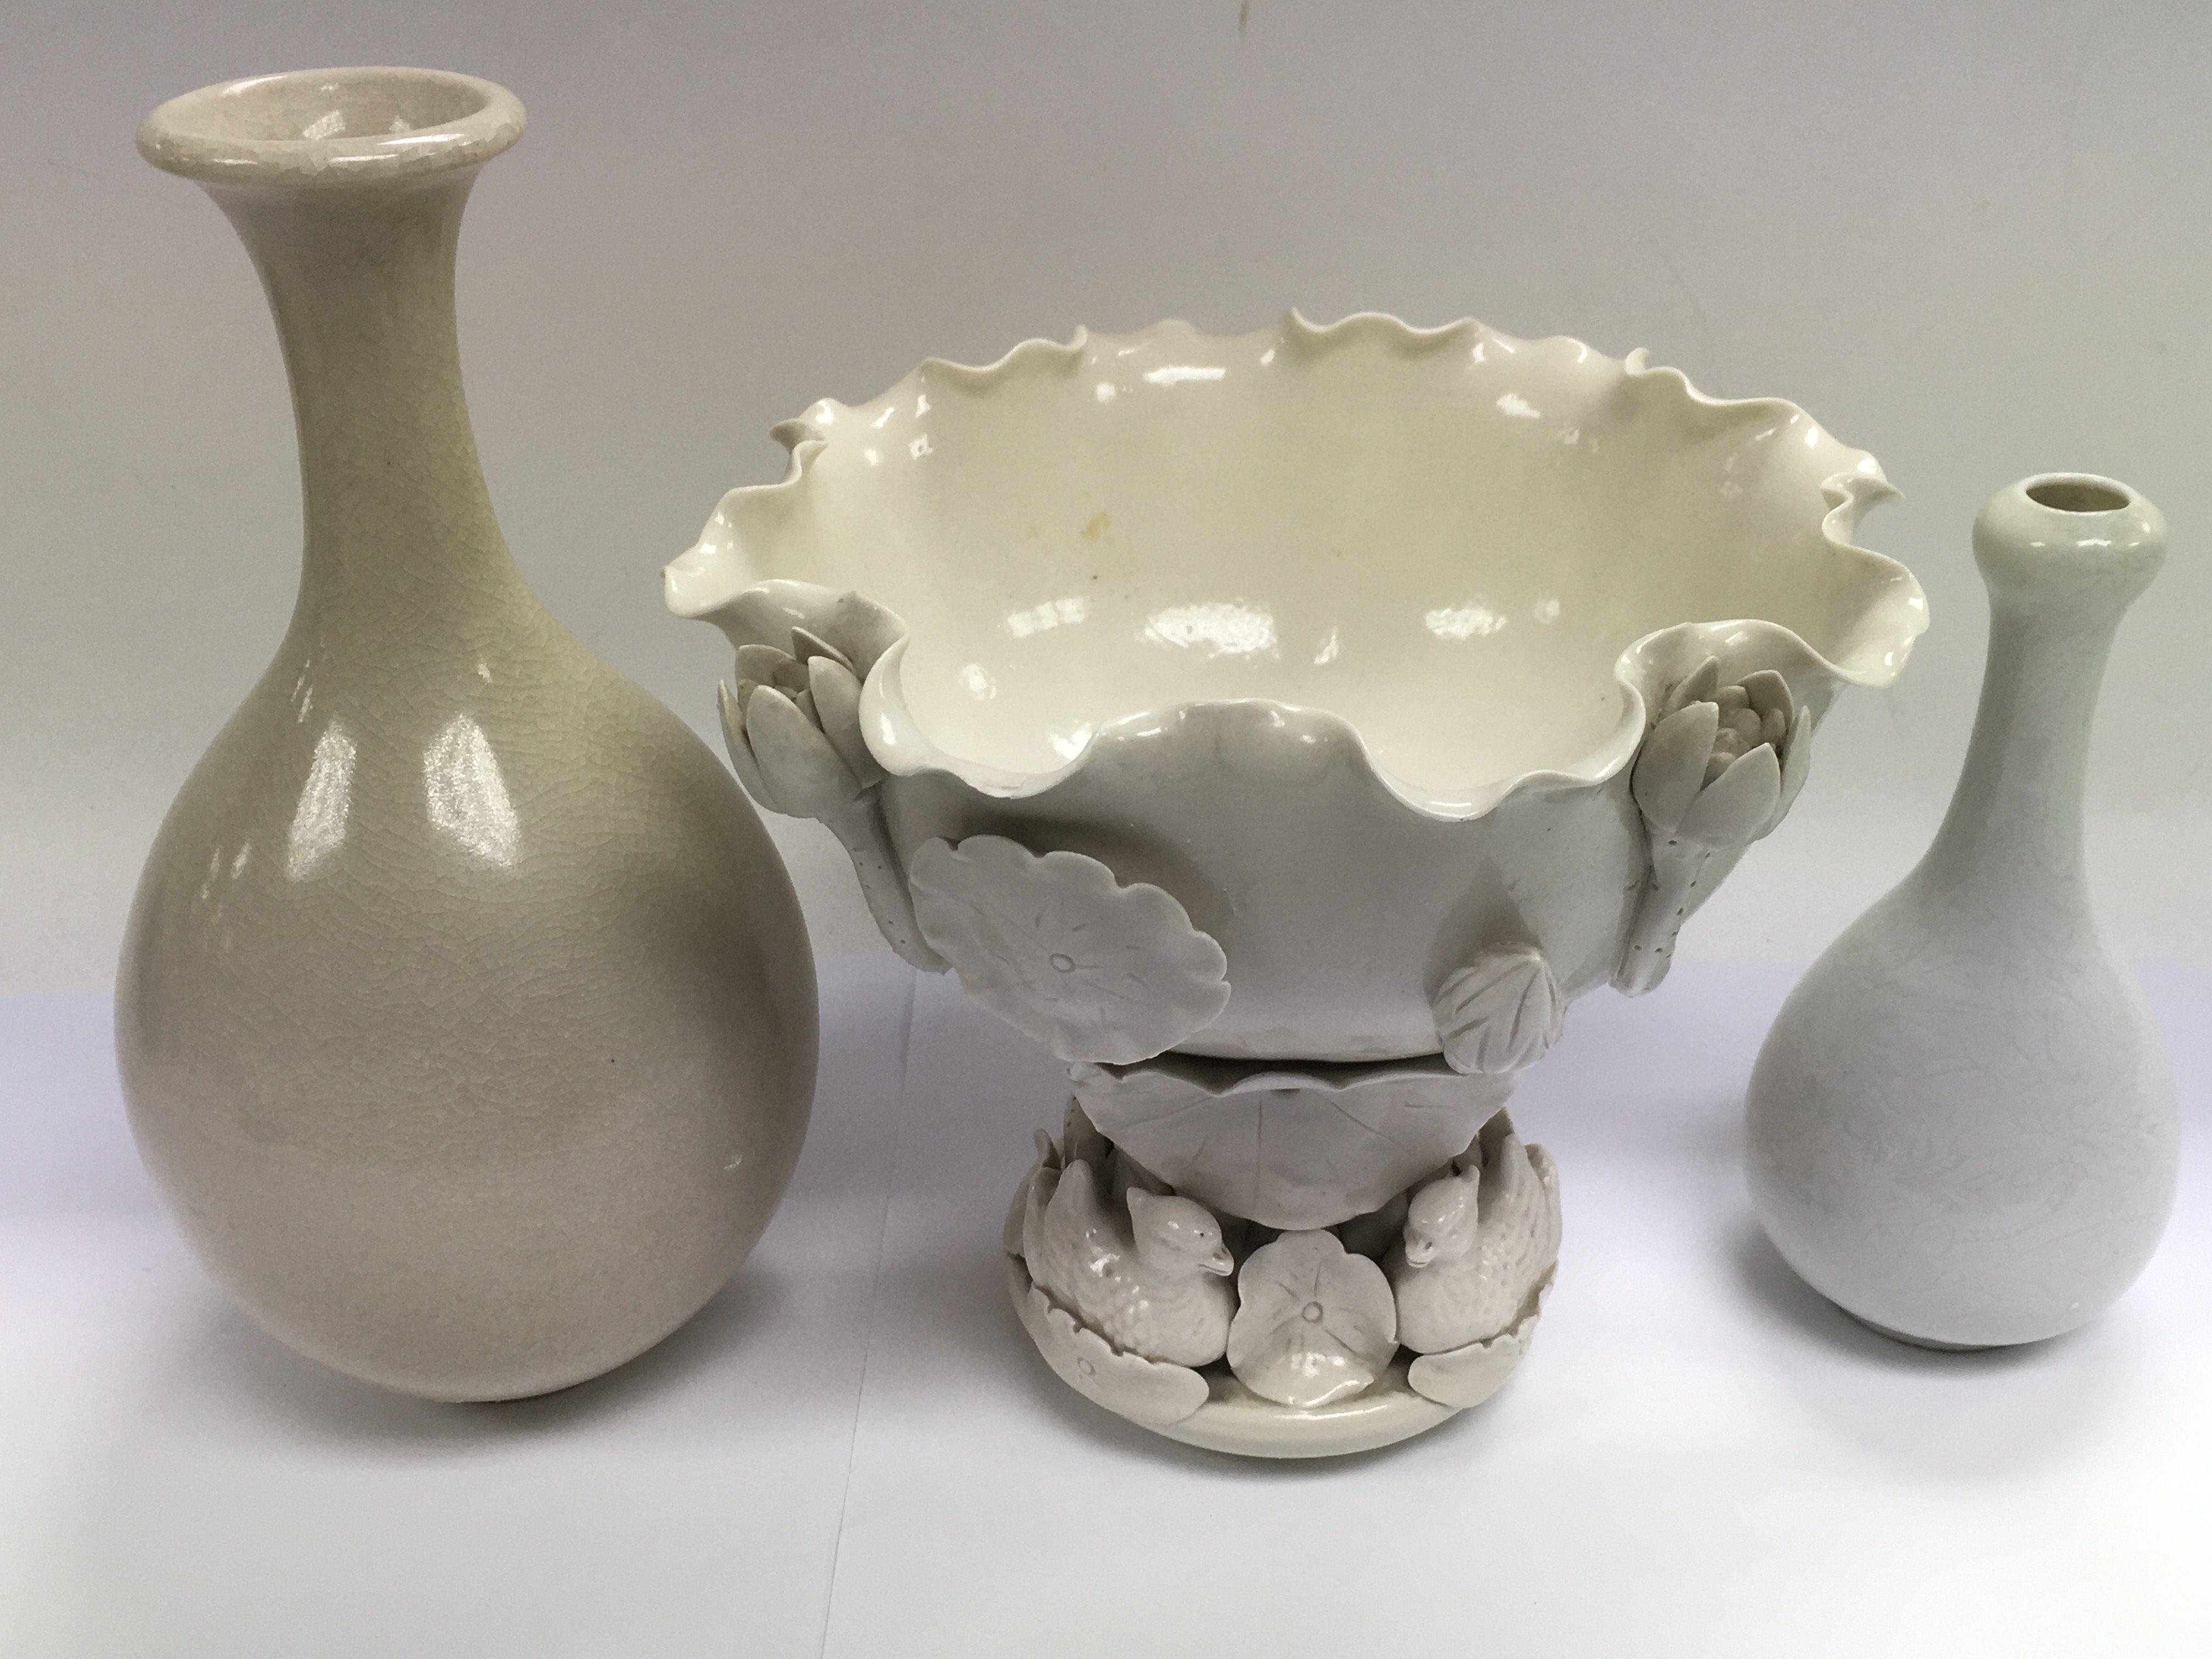 Three white glazed ceramic items including a decor